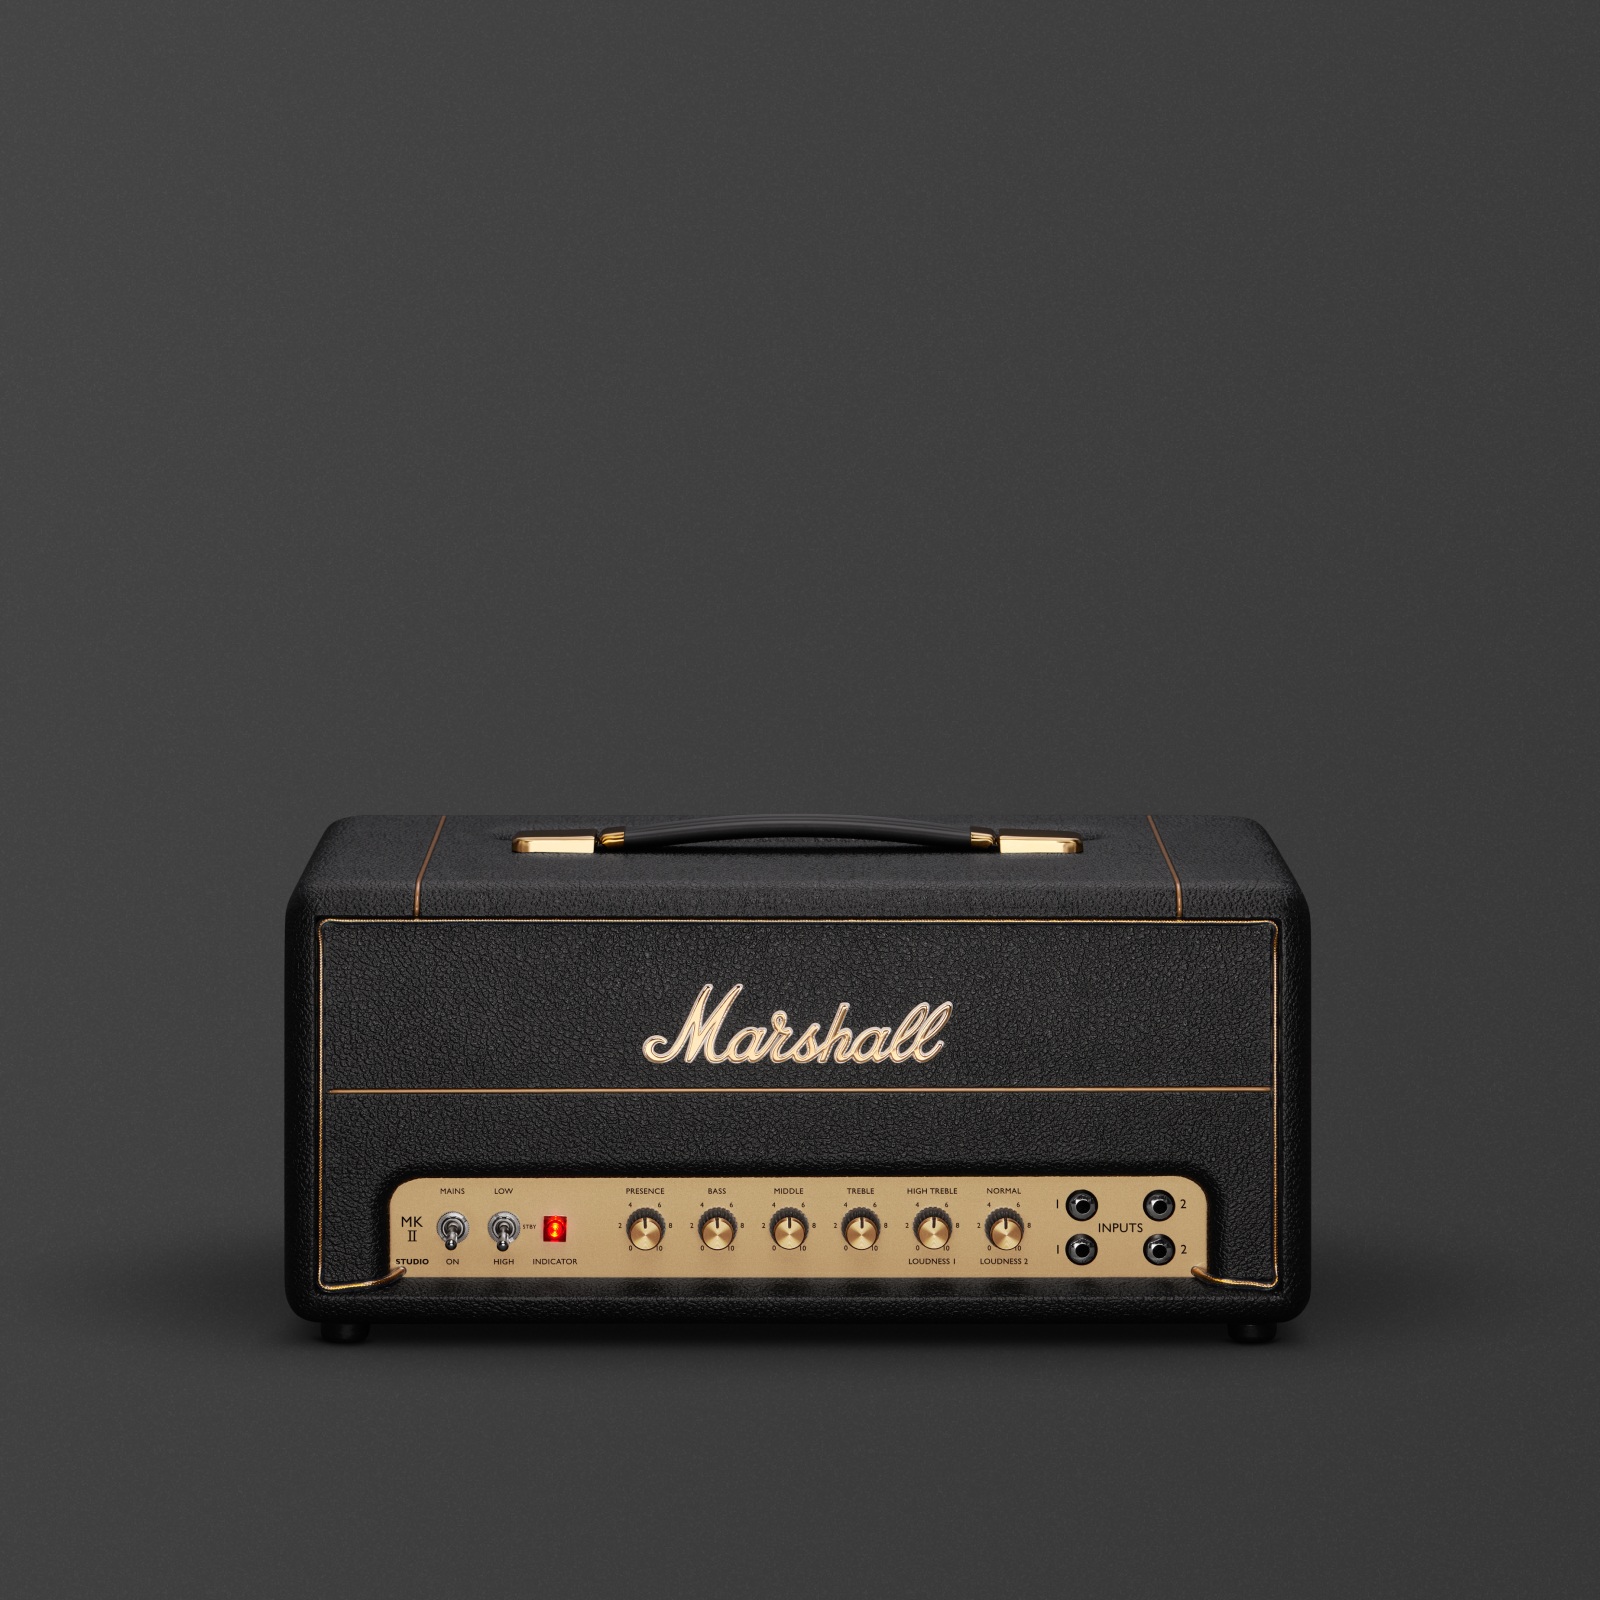 Der Marshall Studio Vintage Head Verstärker.